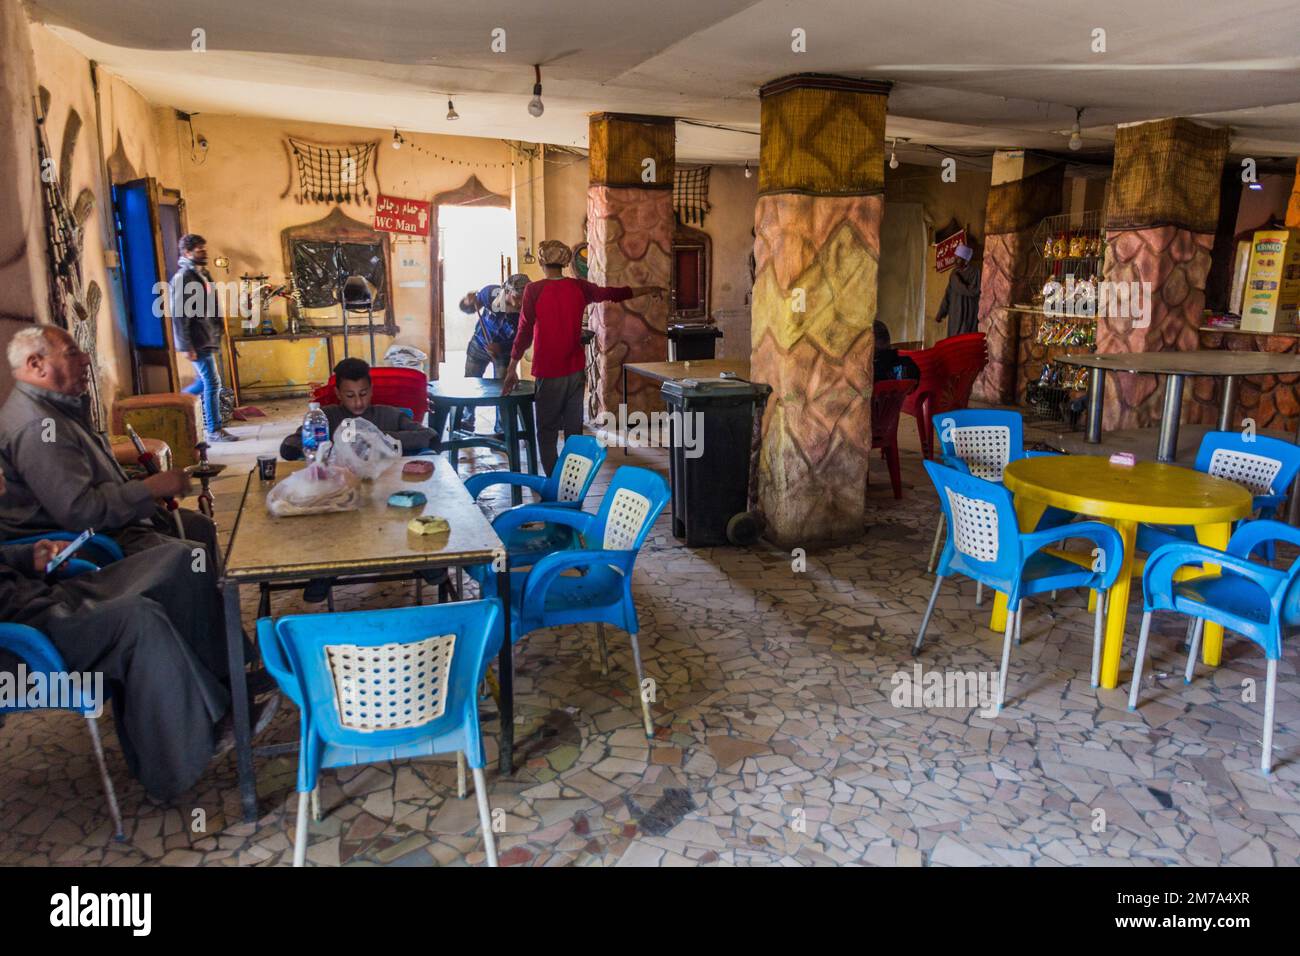 WESTERN DESERT, EGYPT - FEBRUARY 4, 2019: Interior of a road side restaurant on a desert road, Egypt Stock Photo